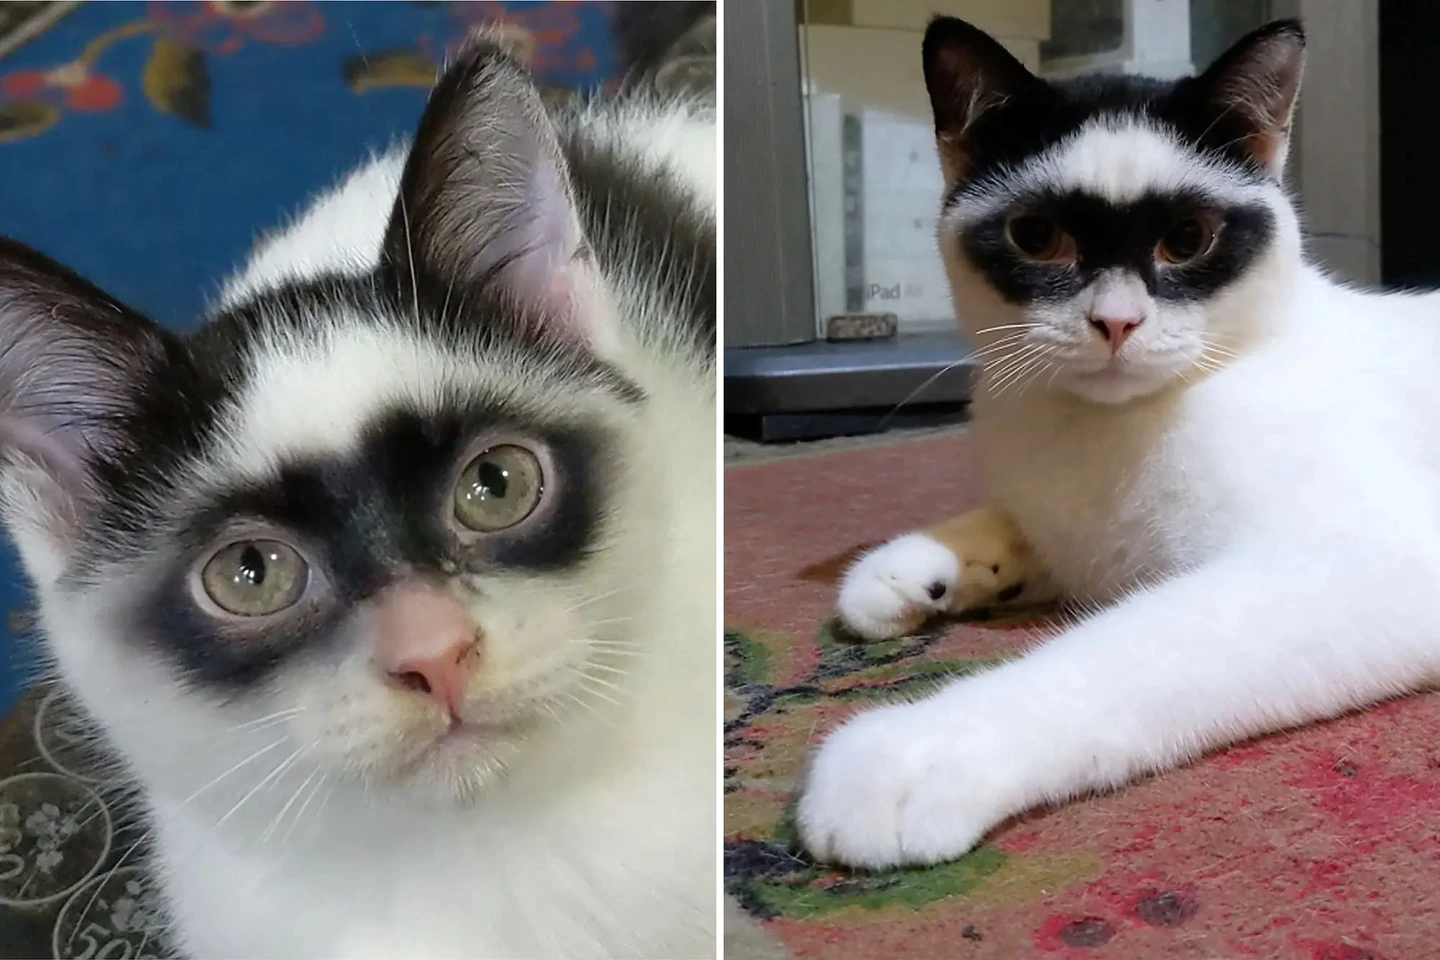 ¡Parece un antifaz! Gatito se vuelve viral por su parecido a "El Zorro"